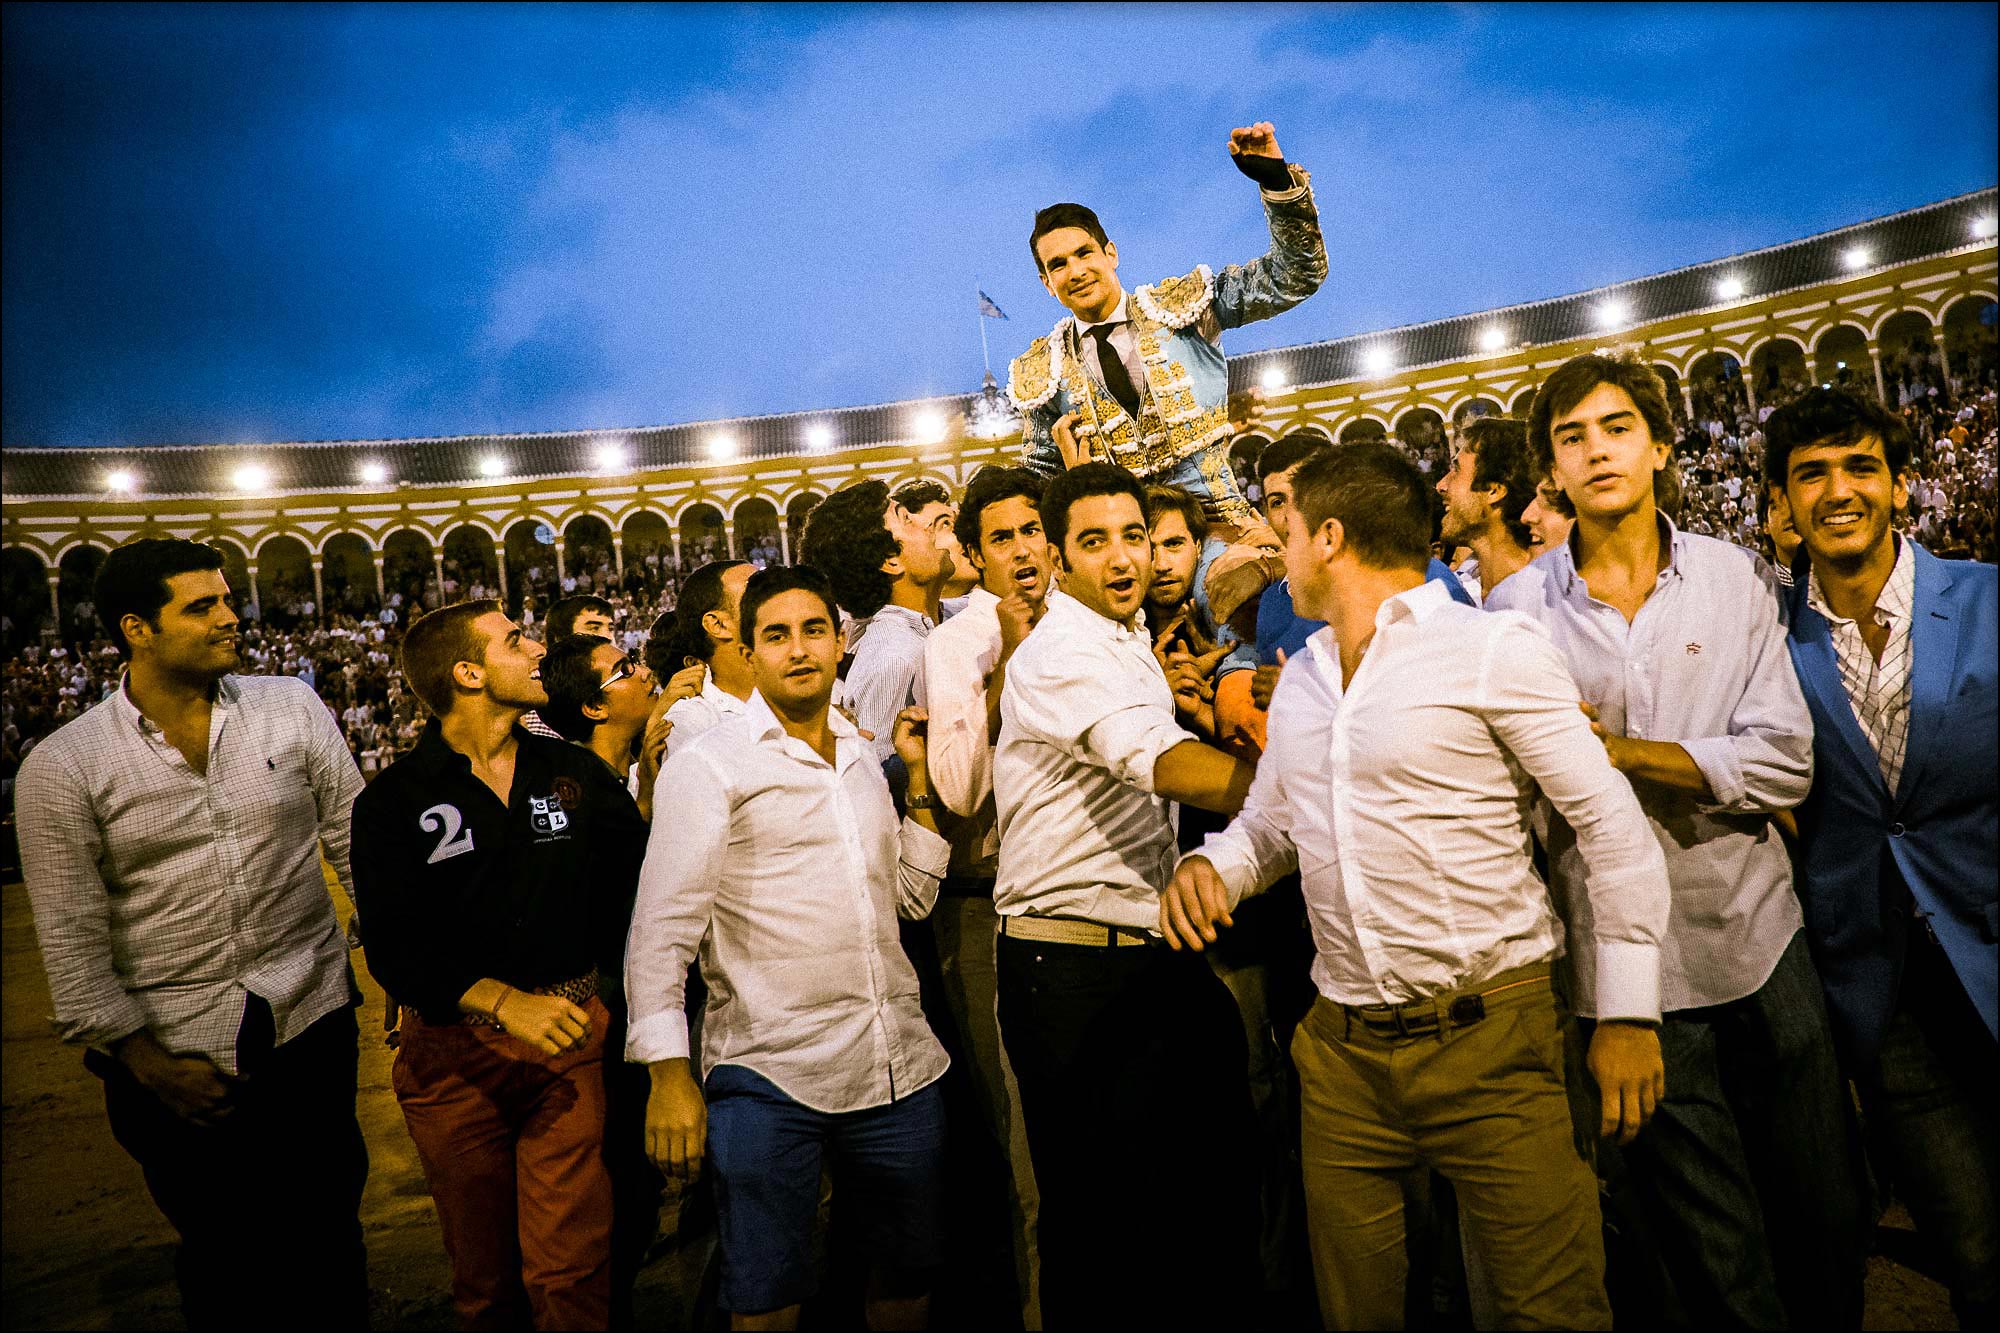 bullfighter José Maria Manzanares wins the season after a bullfight in sevilla spain